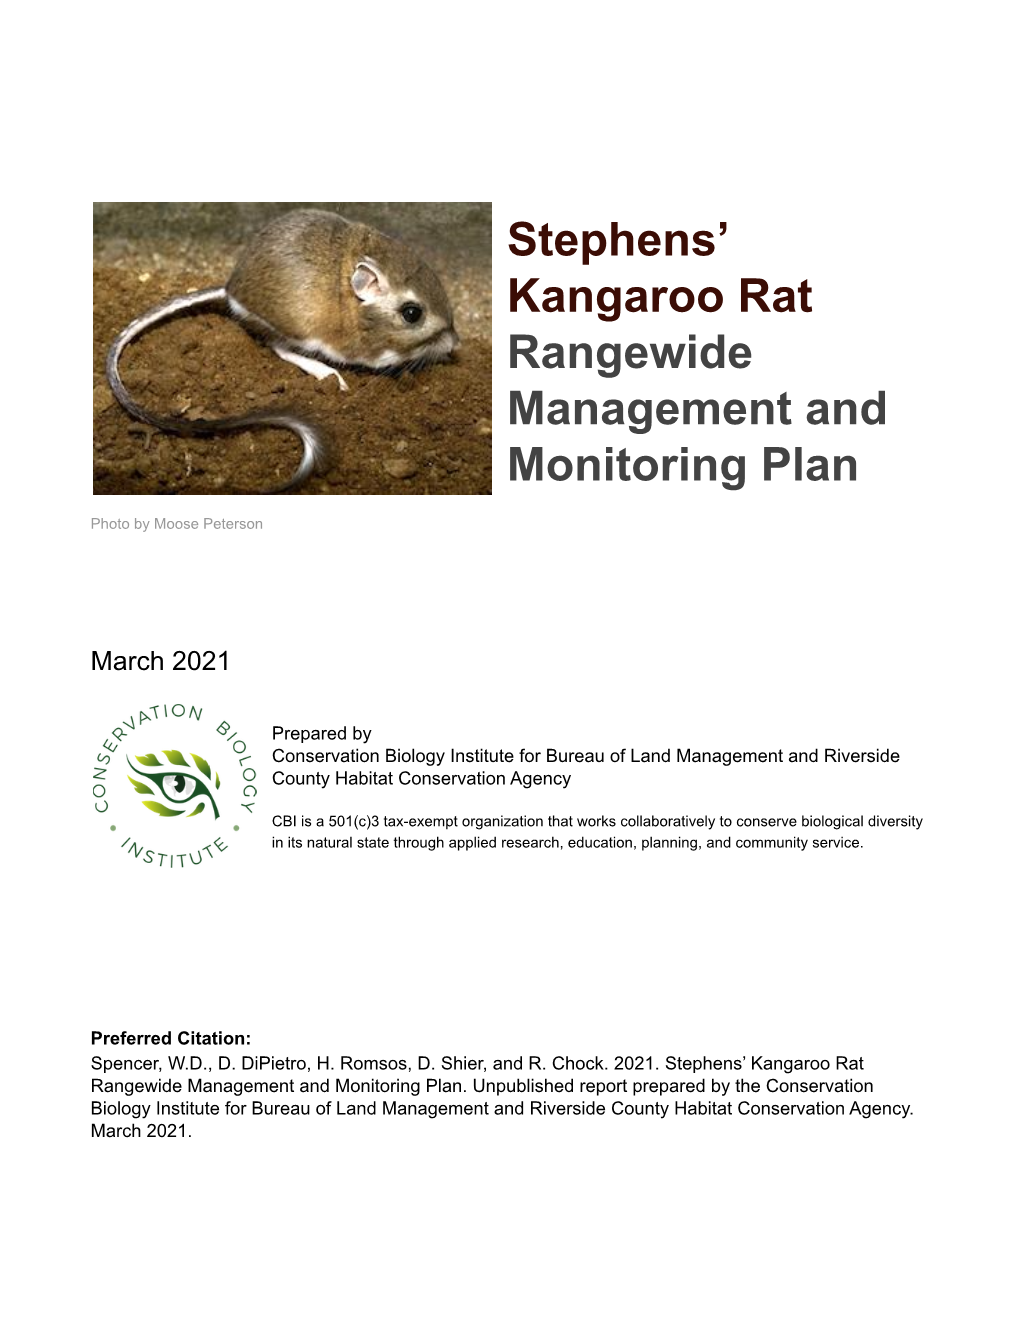 2021 Rangewide SKR Management & Monitoring Plan